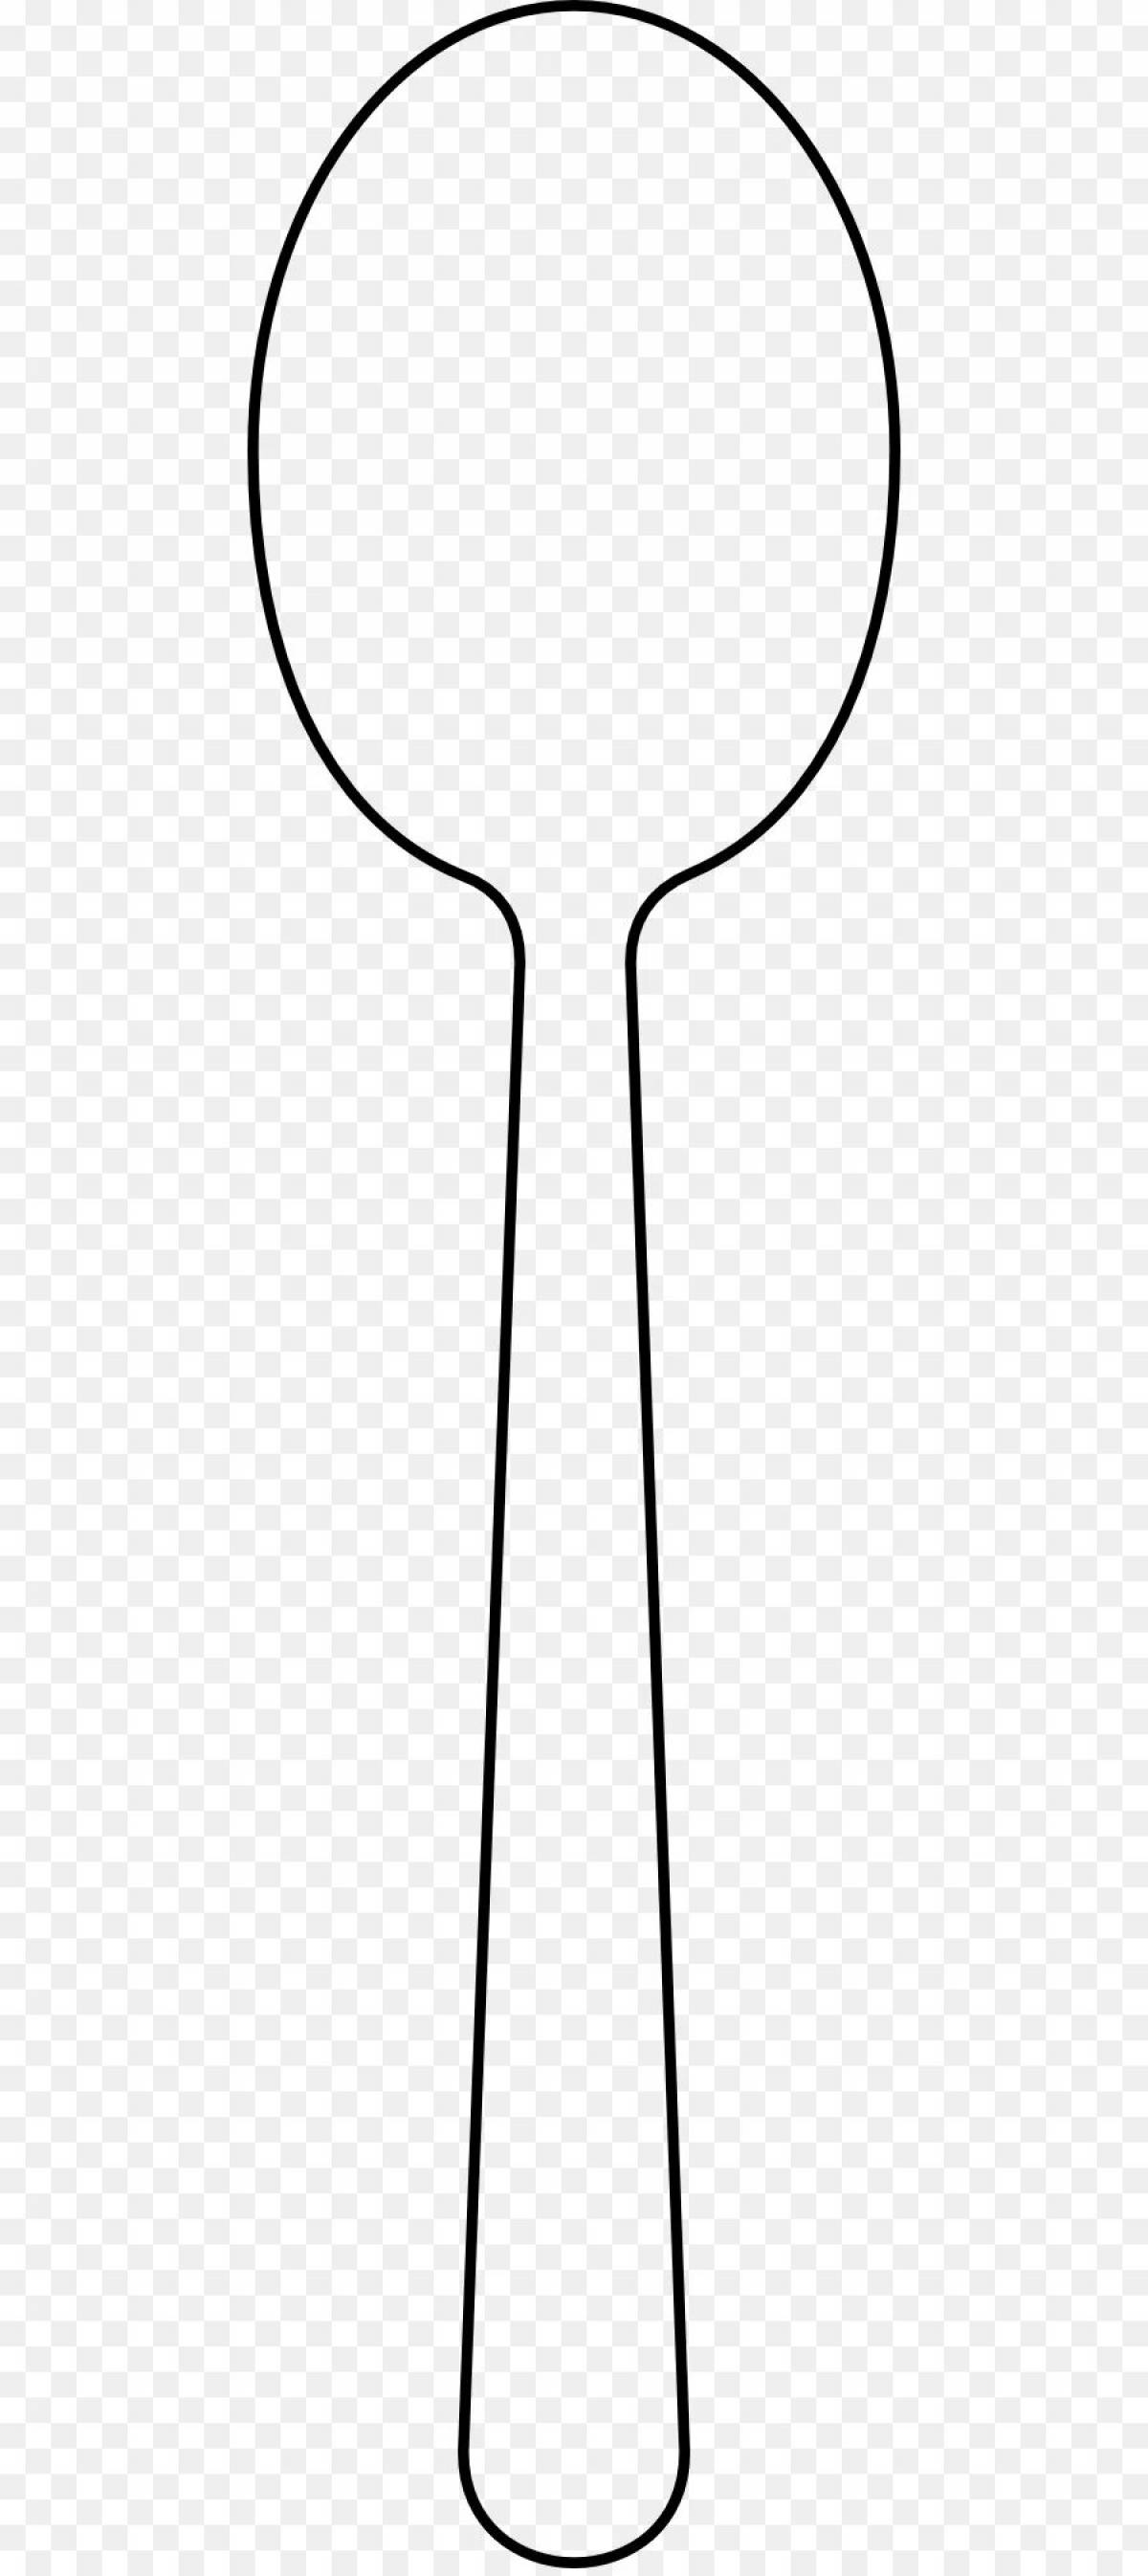 Children's wooden spoon #17